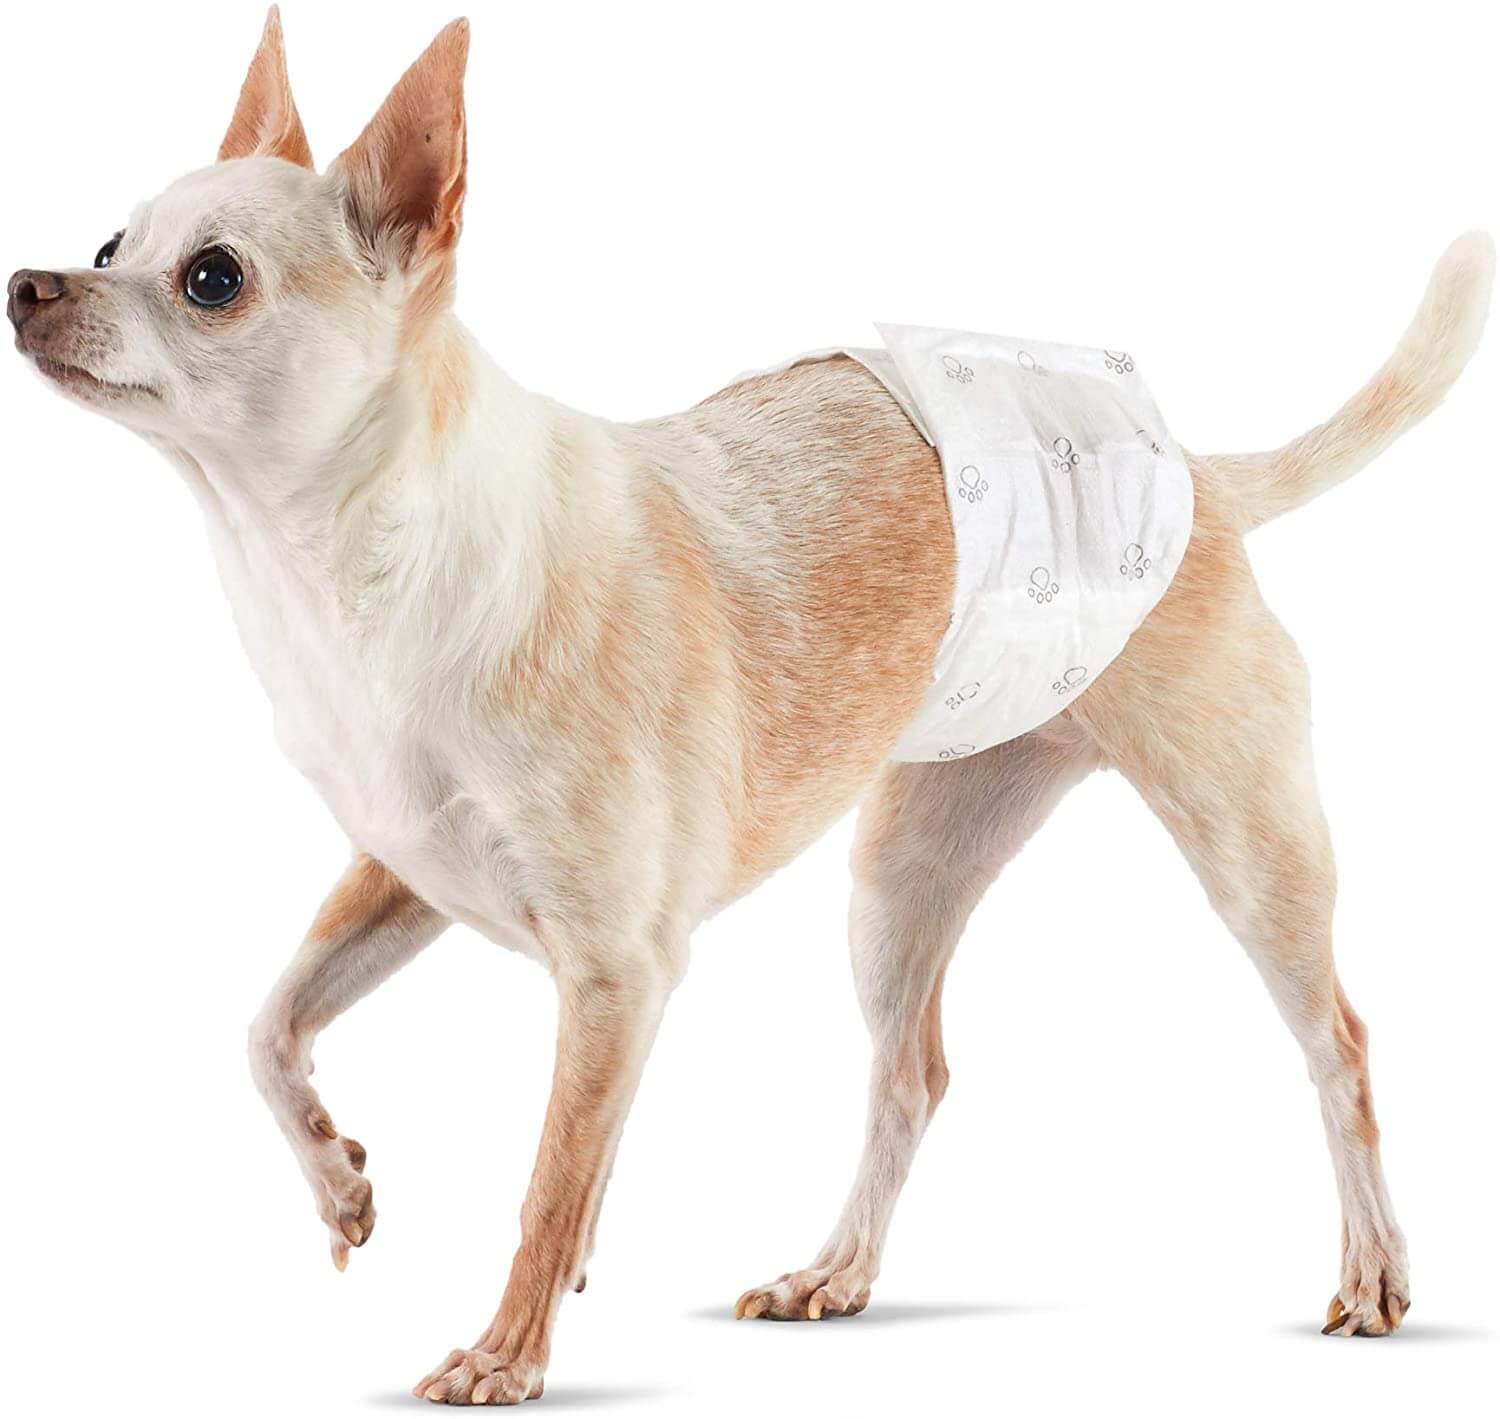 Amazon Basics Male Dog Wrap